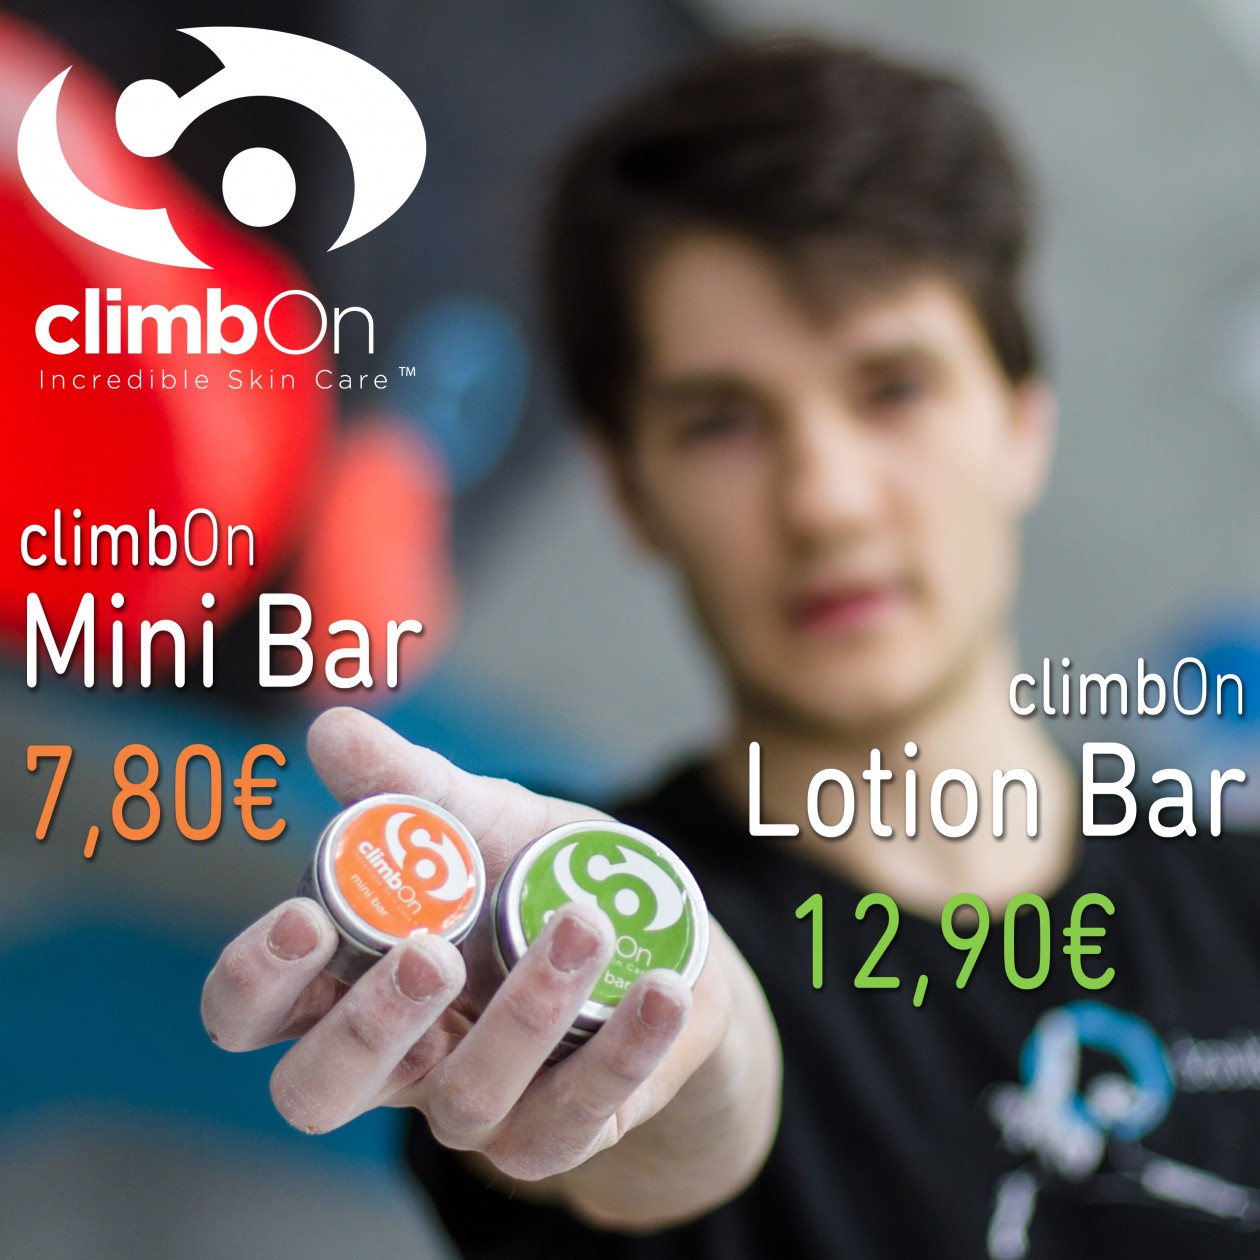 climbOn Lotion Bar und Mini Bar